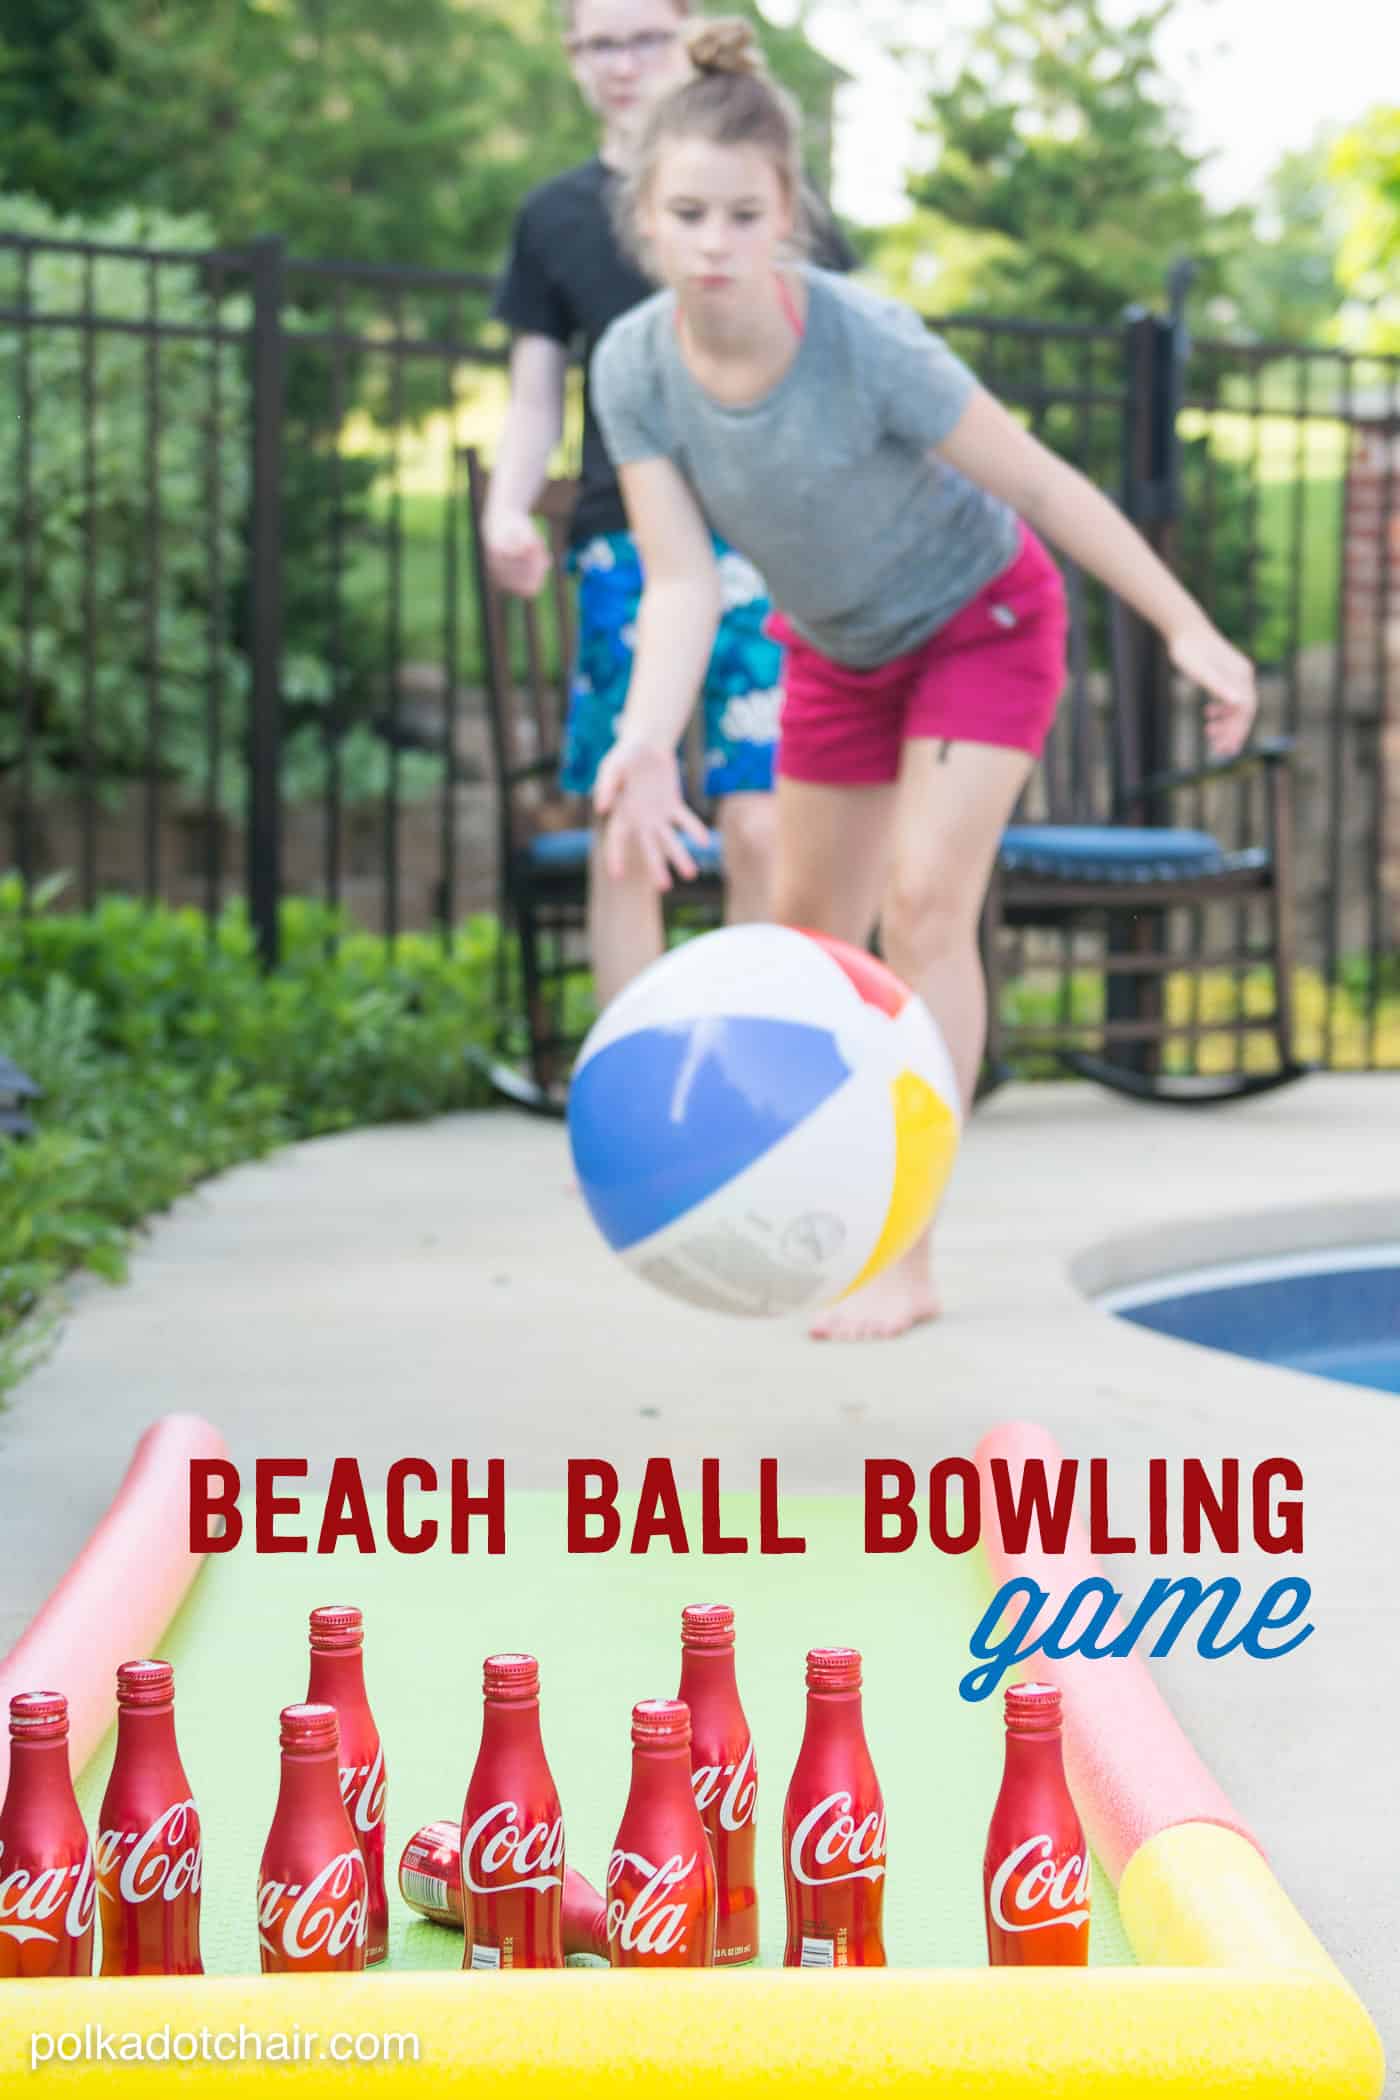 Beach ball bowling